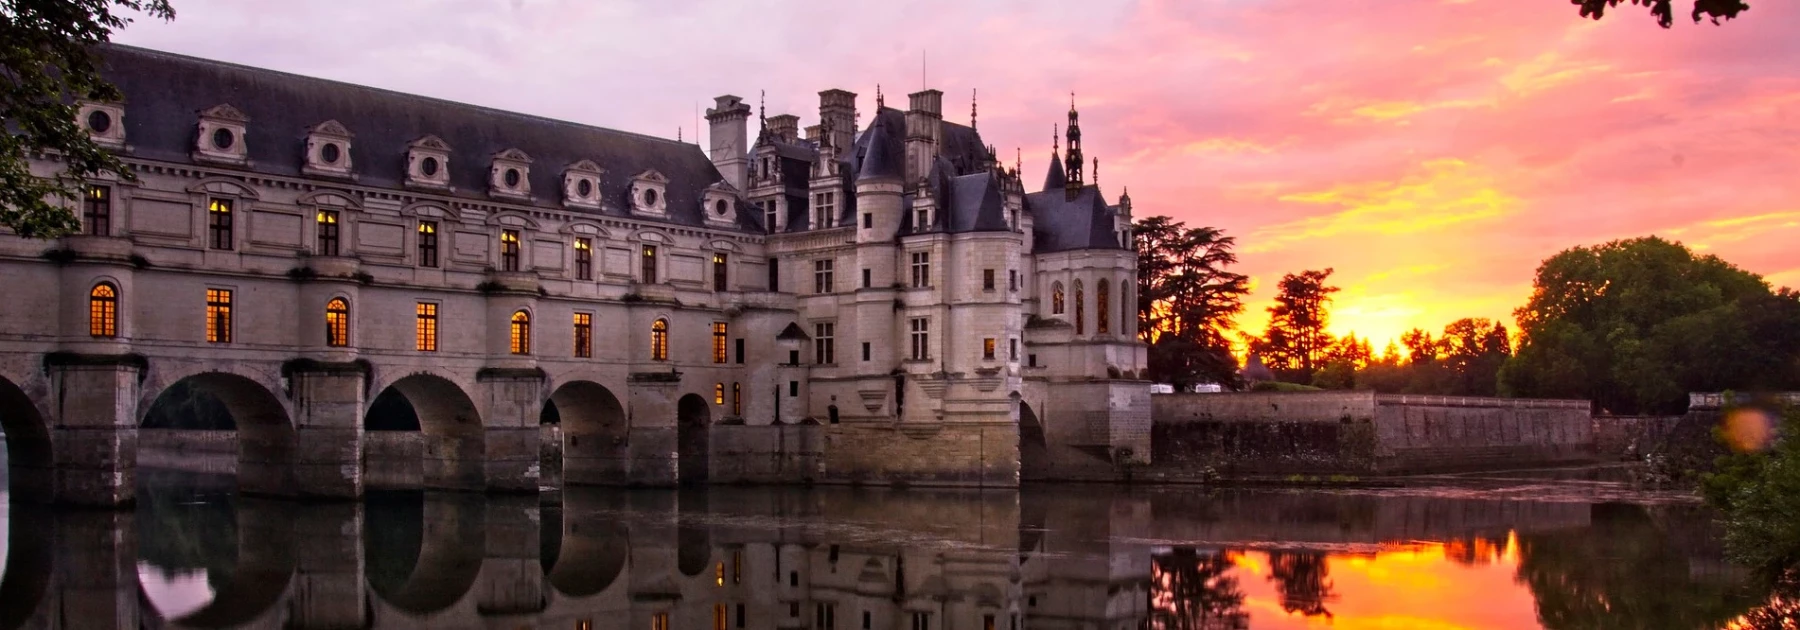 Les plus beaux châteaux de France, France